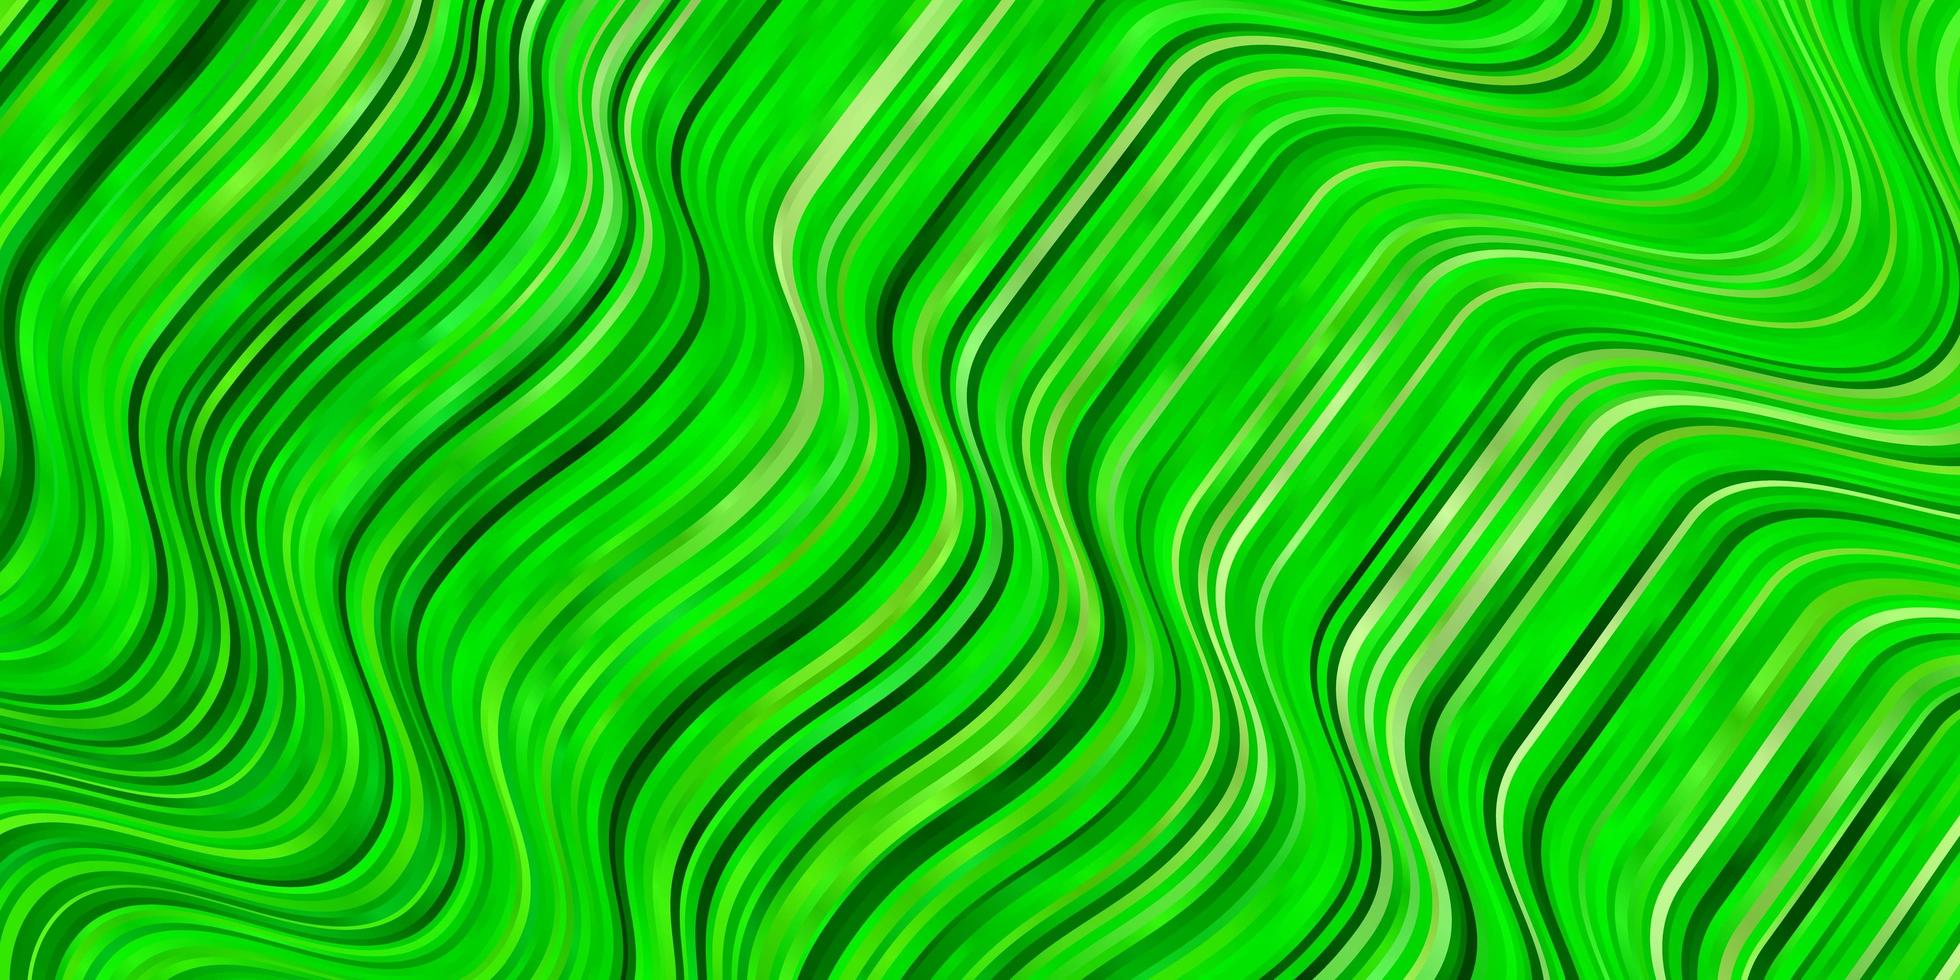 Light Green vector backdrop with circular arc.